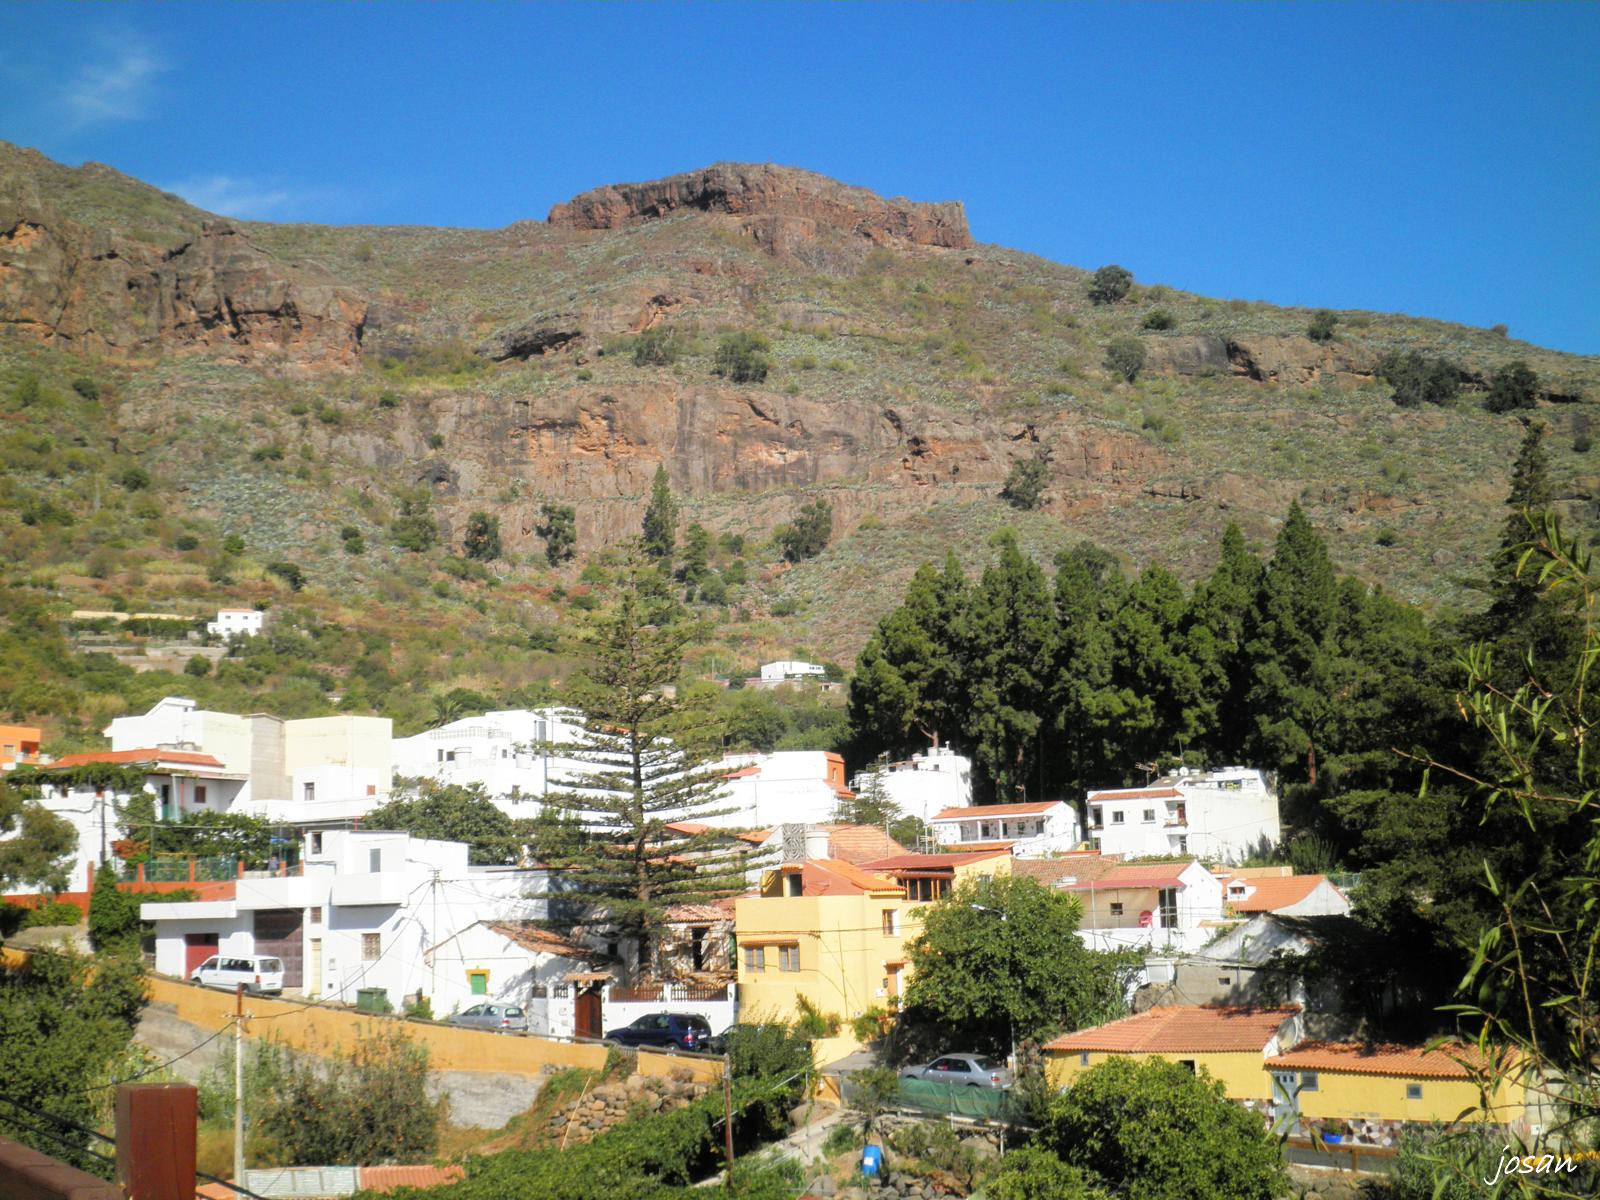 Foto: visitando valsequillo - Tenteniguada (Valsequillo) (Las Palmas), España